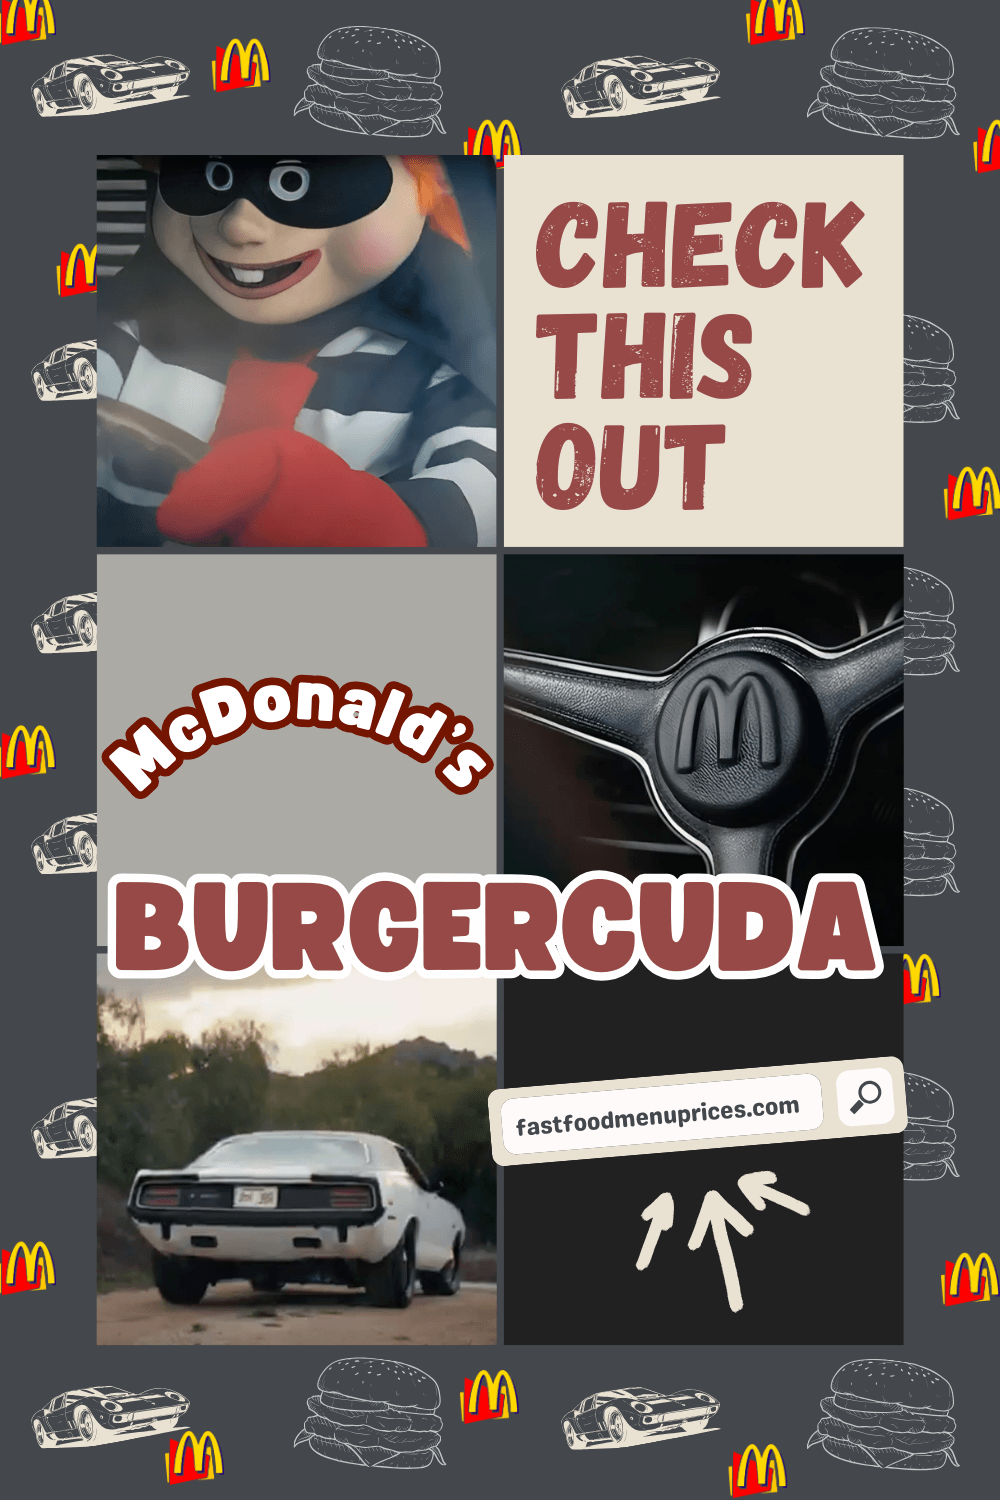 Check out the secret menu at McDonald's burgercuda.